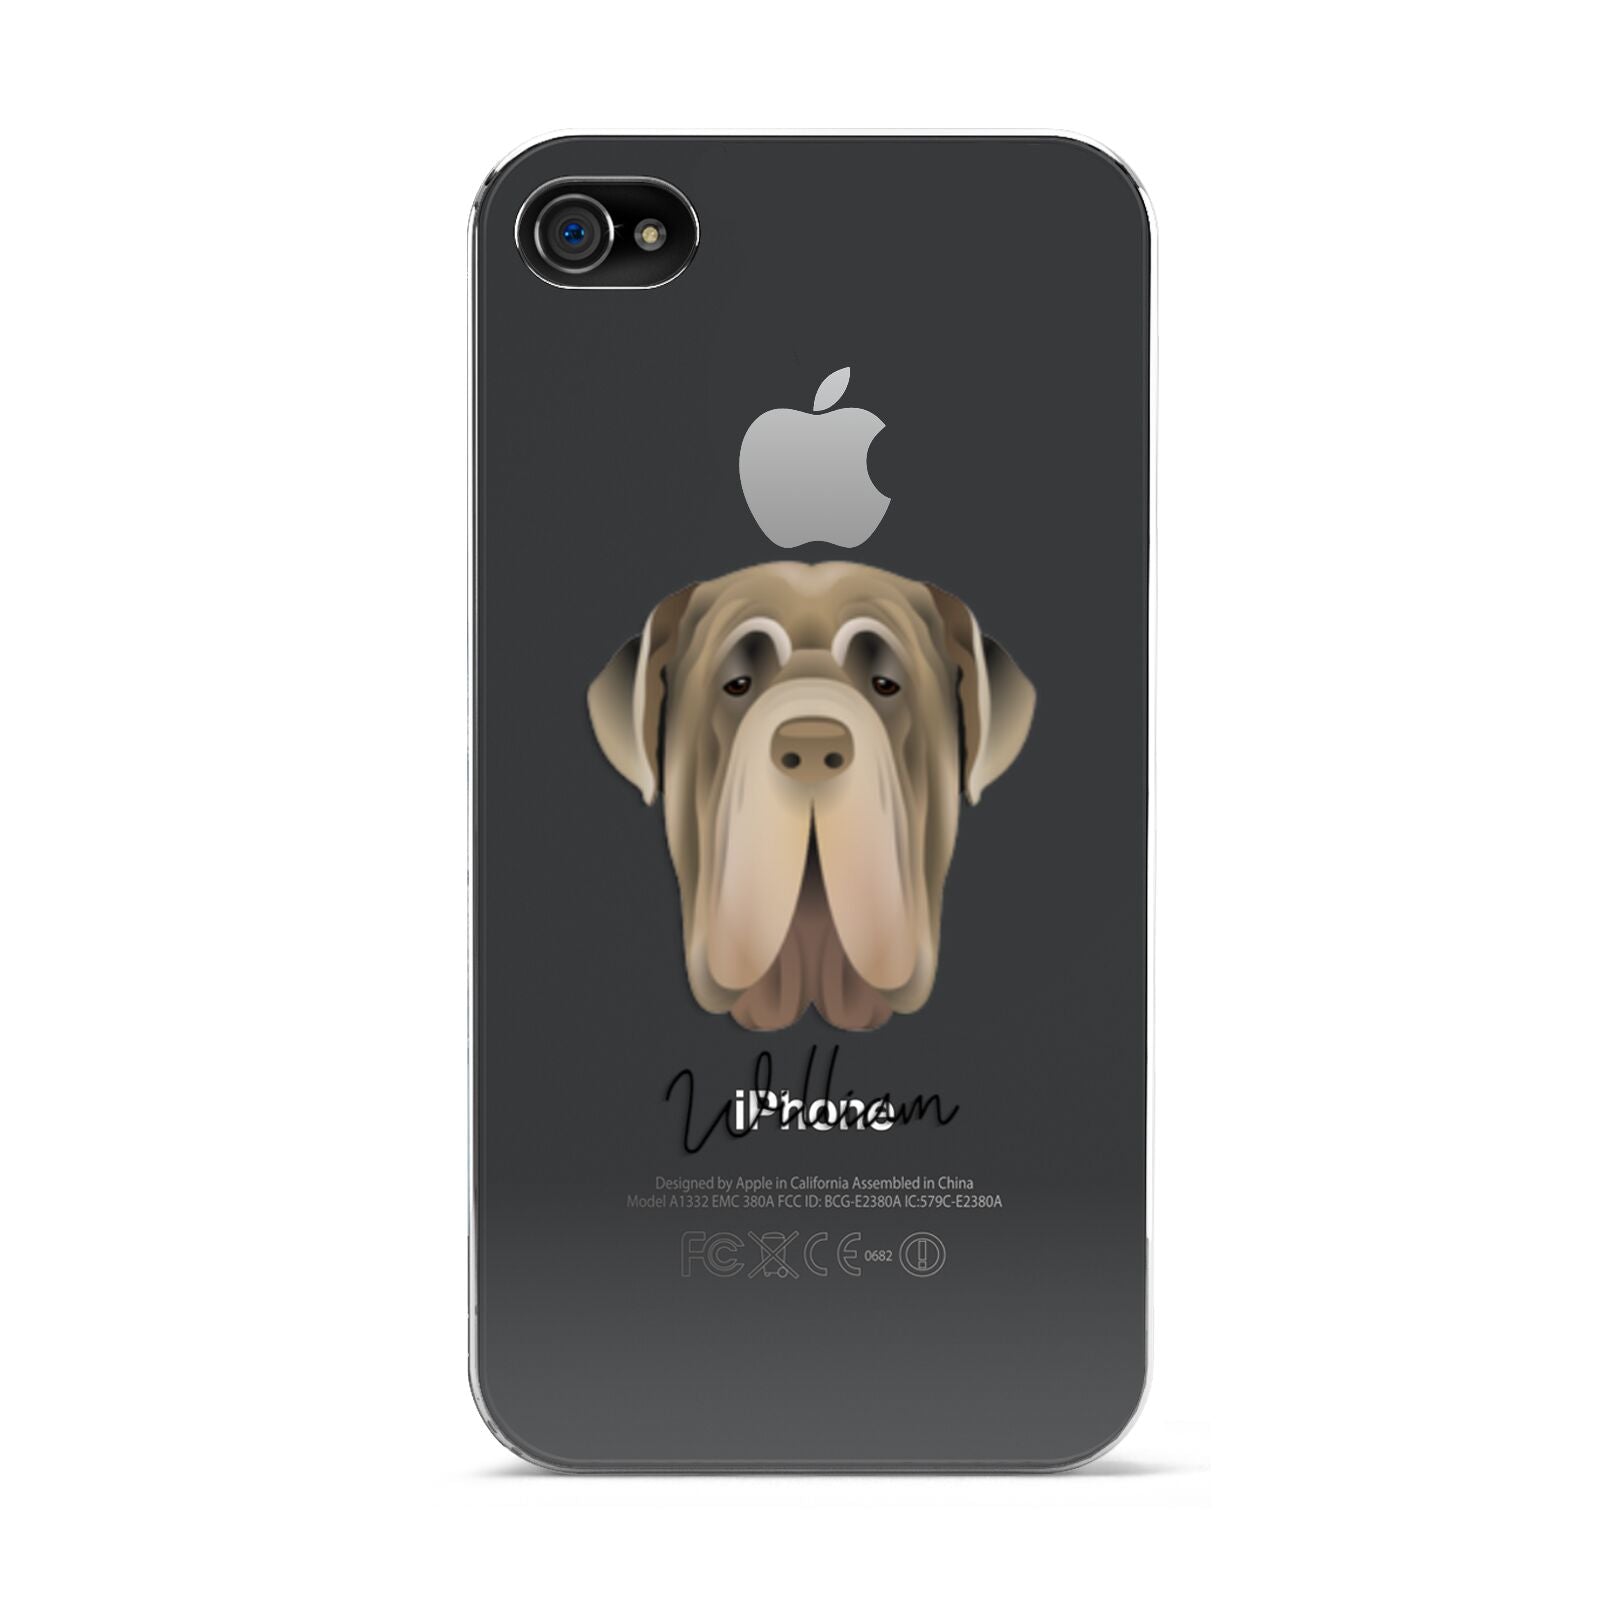 Neapolitan Mastiff Personalised Apple iPhone 4s Case